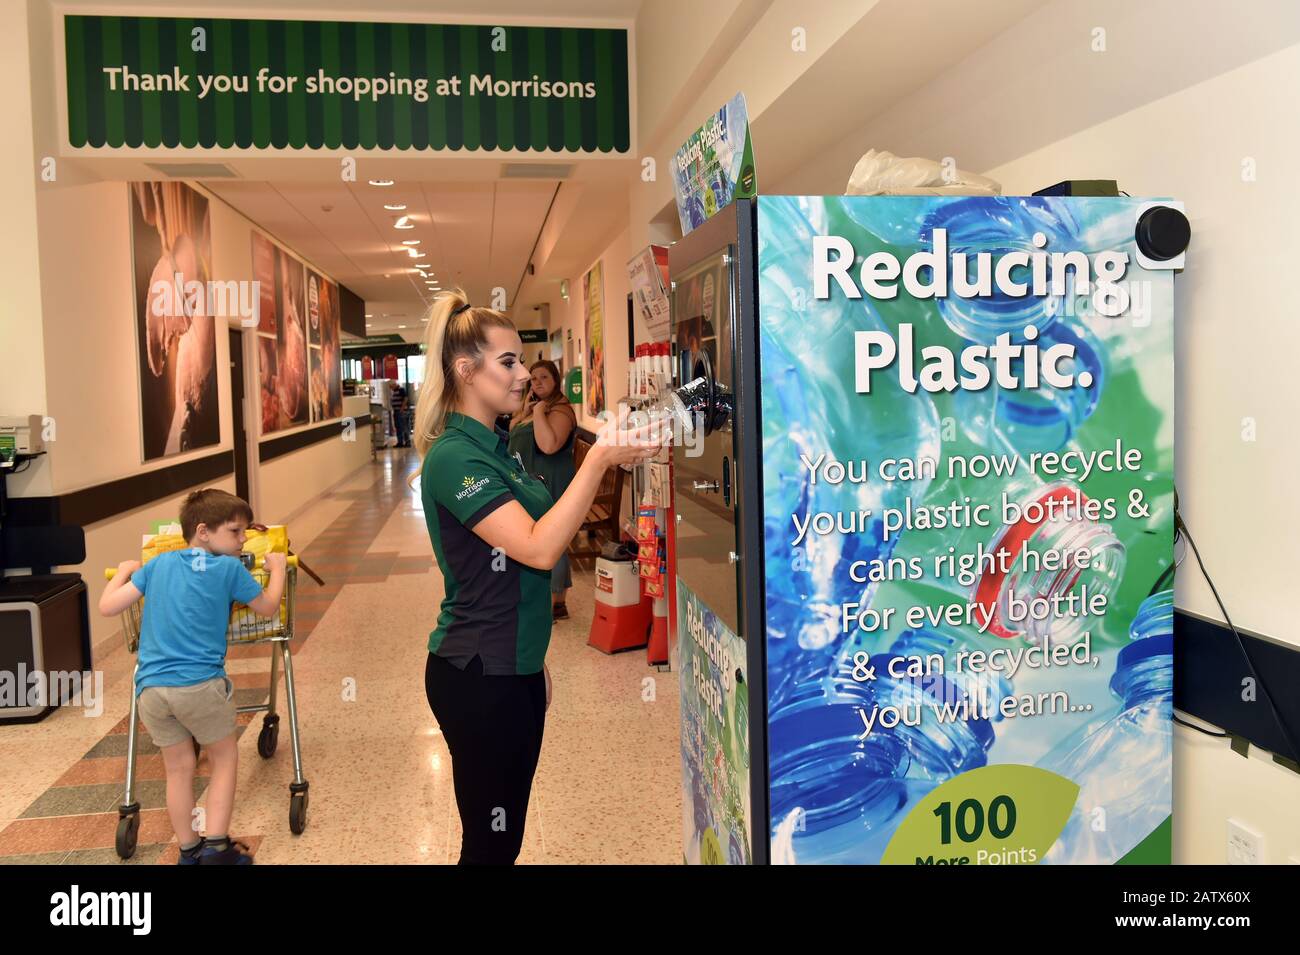 Les Supermarchés Morrisons trient un distributeur automatique inversé dans le magasin pour que les clients puissent insérer des bouteilles en plastique vides et recevoir des points de fidélité. Banque D'Images